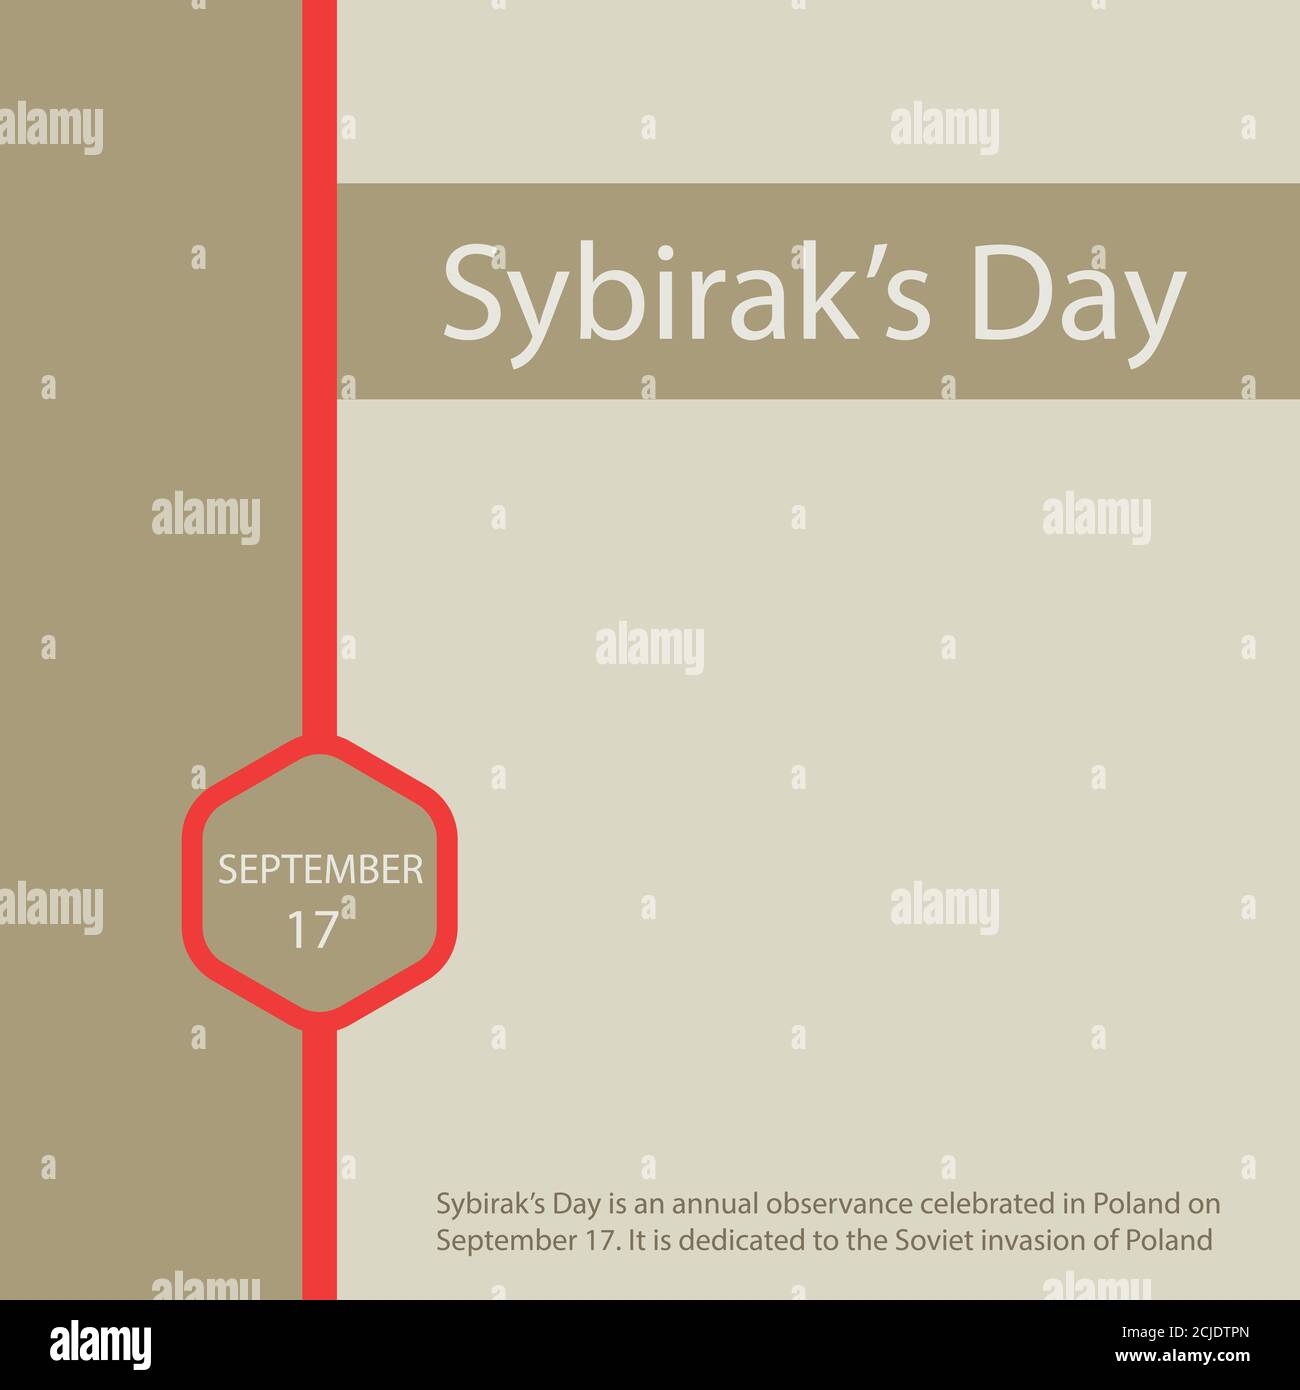 Der Sybirak-Tag ist ein jährliches Fest, das am 17. September in Polen gefeiert wird. Es ist der sowjetischen Invasion Polens gewidmet. Stock Vektor